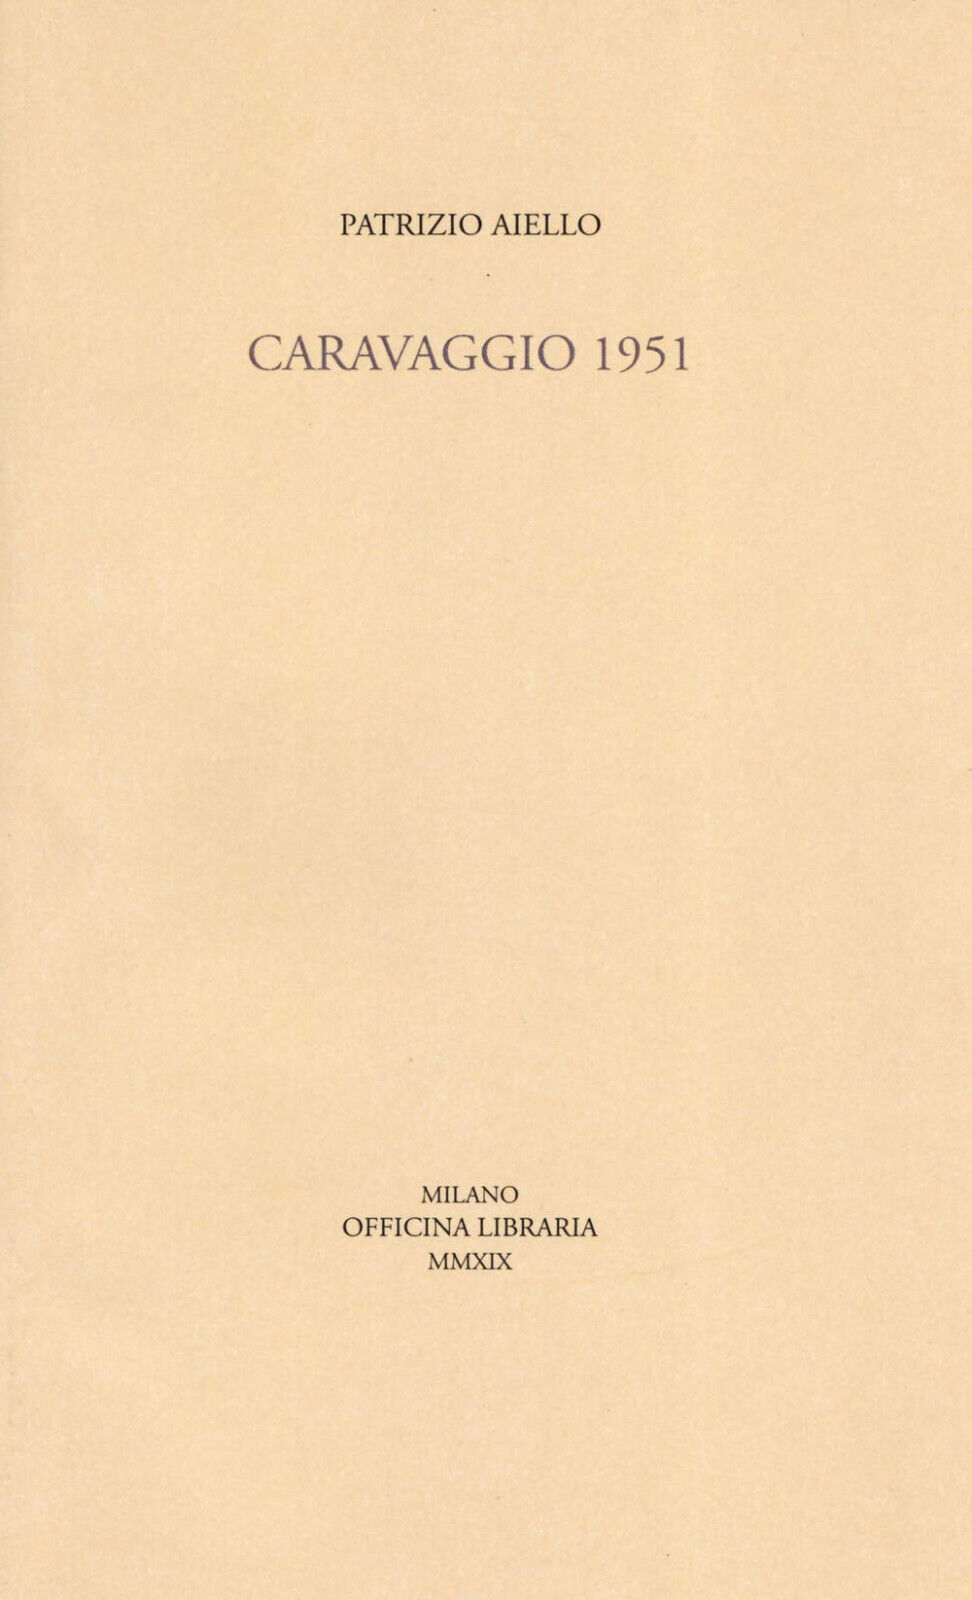 Caravaggio 1951 - Patrizio Aiello - Officina Libraria, 2019